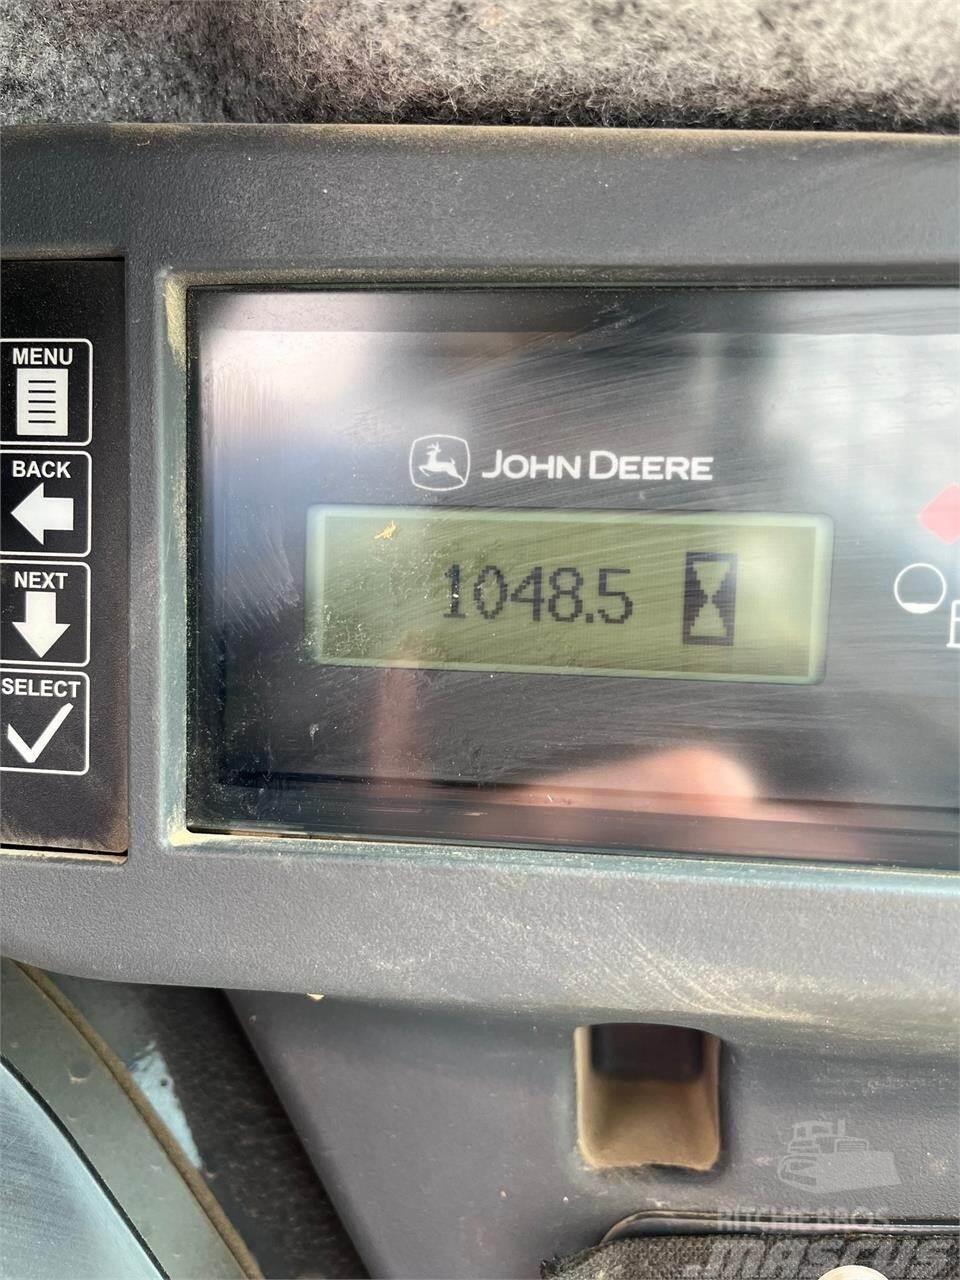 John Deere 333G Krautuvai su šoniniu pasukimu